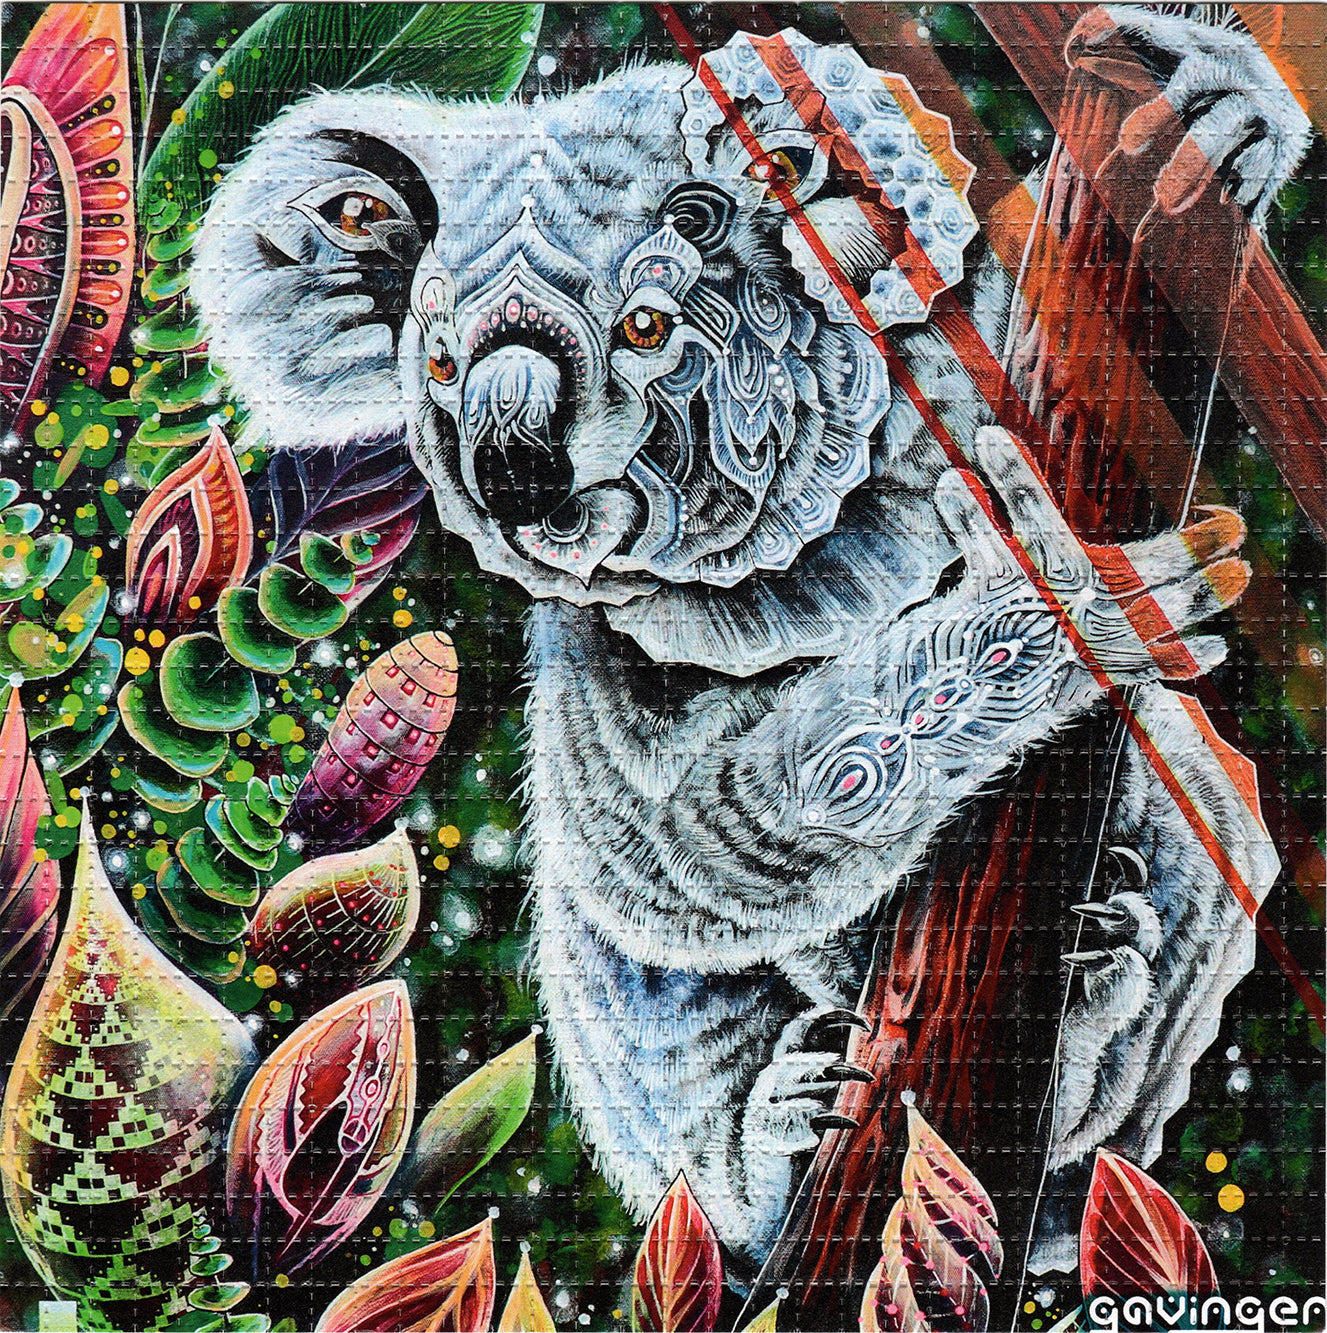 Sacred Koala by GavinGerArt Signed Limited Edition LSD blotter art print